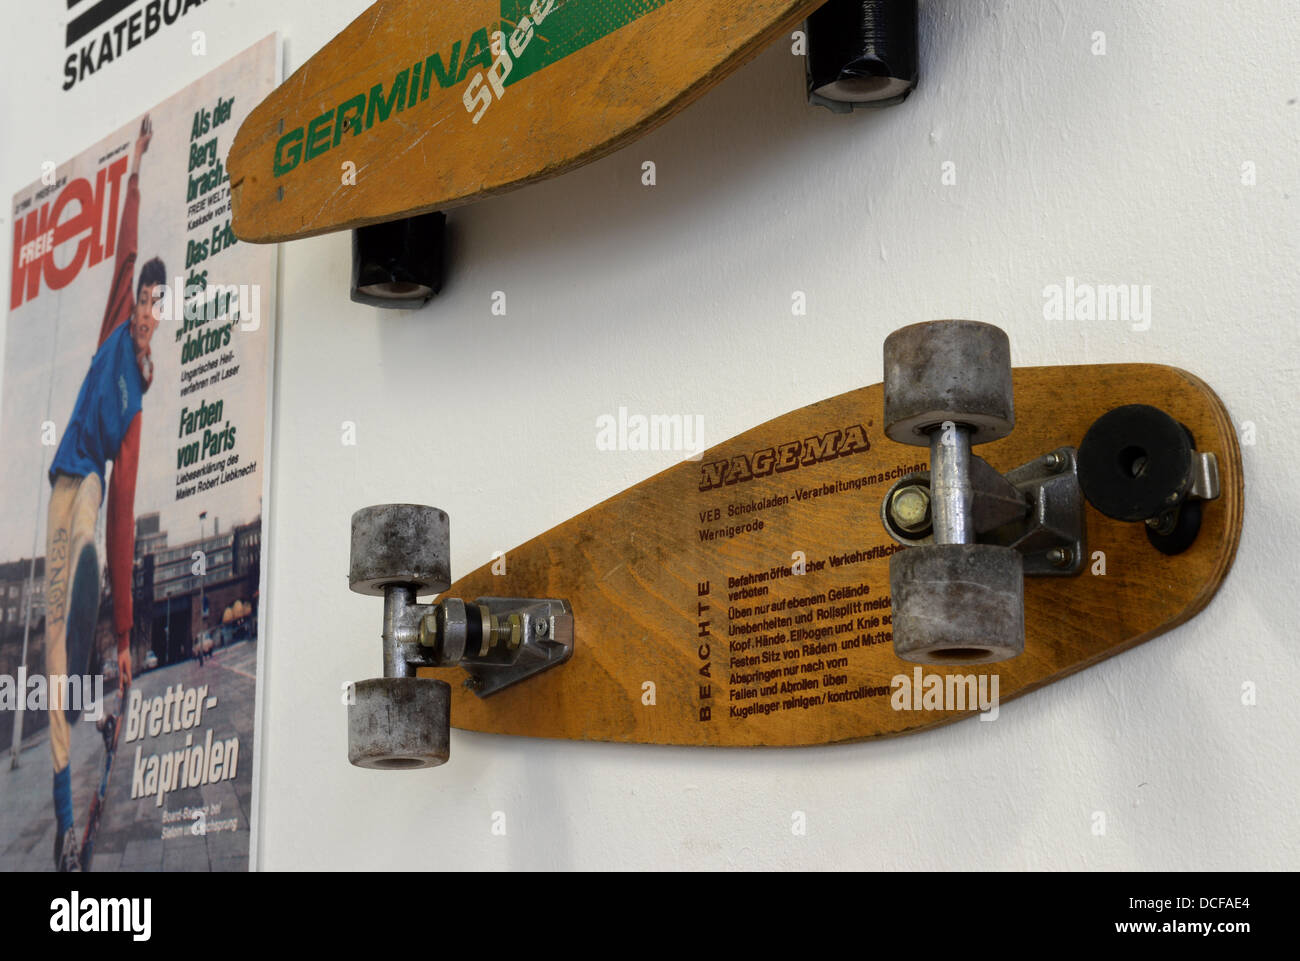 De nombreuses réglementations et une plaquette de frein sont vus sur une  planche à roulettes de la RDA pendant la construction des oeuvres d'une  exposition de planche à roulettes au Stattbad à